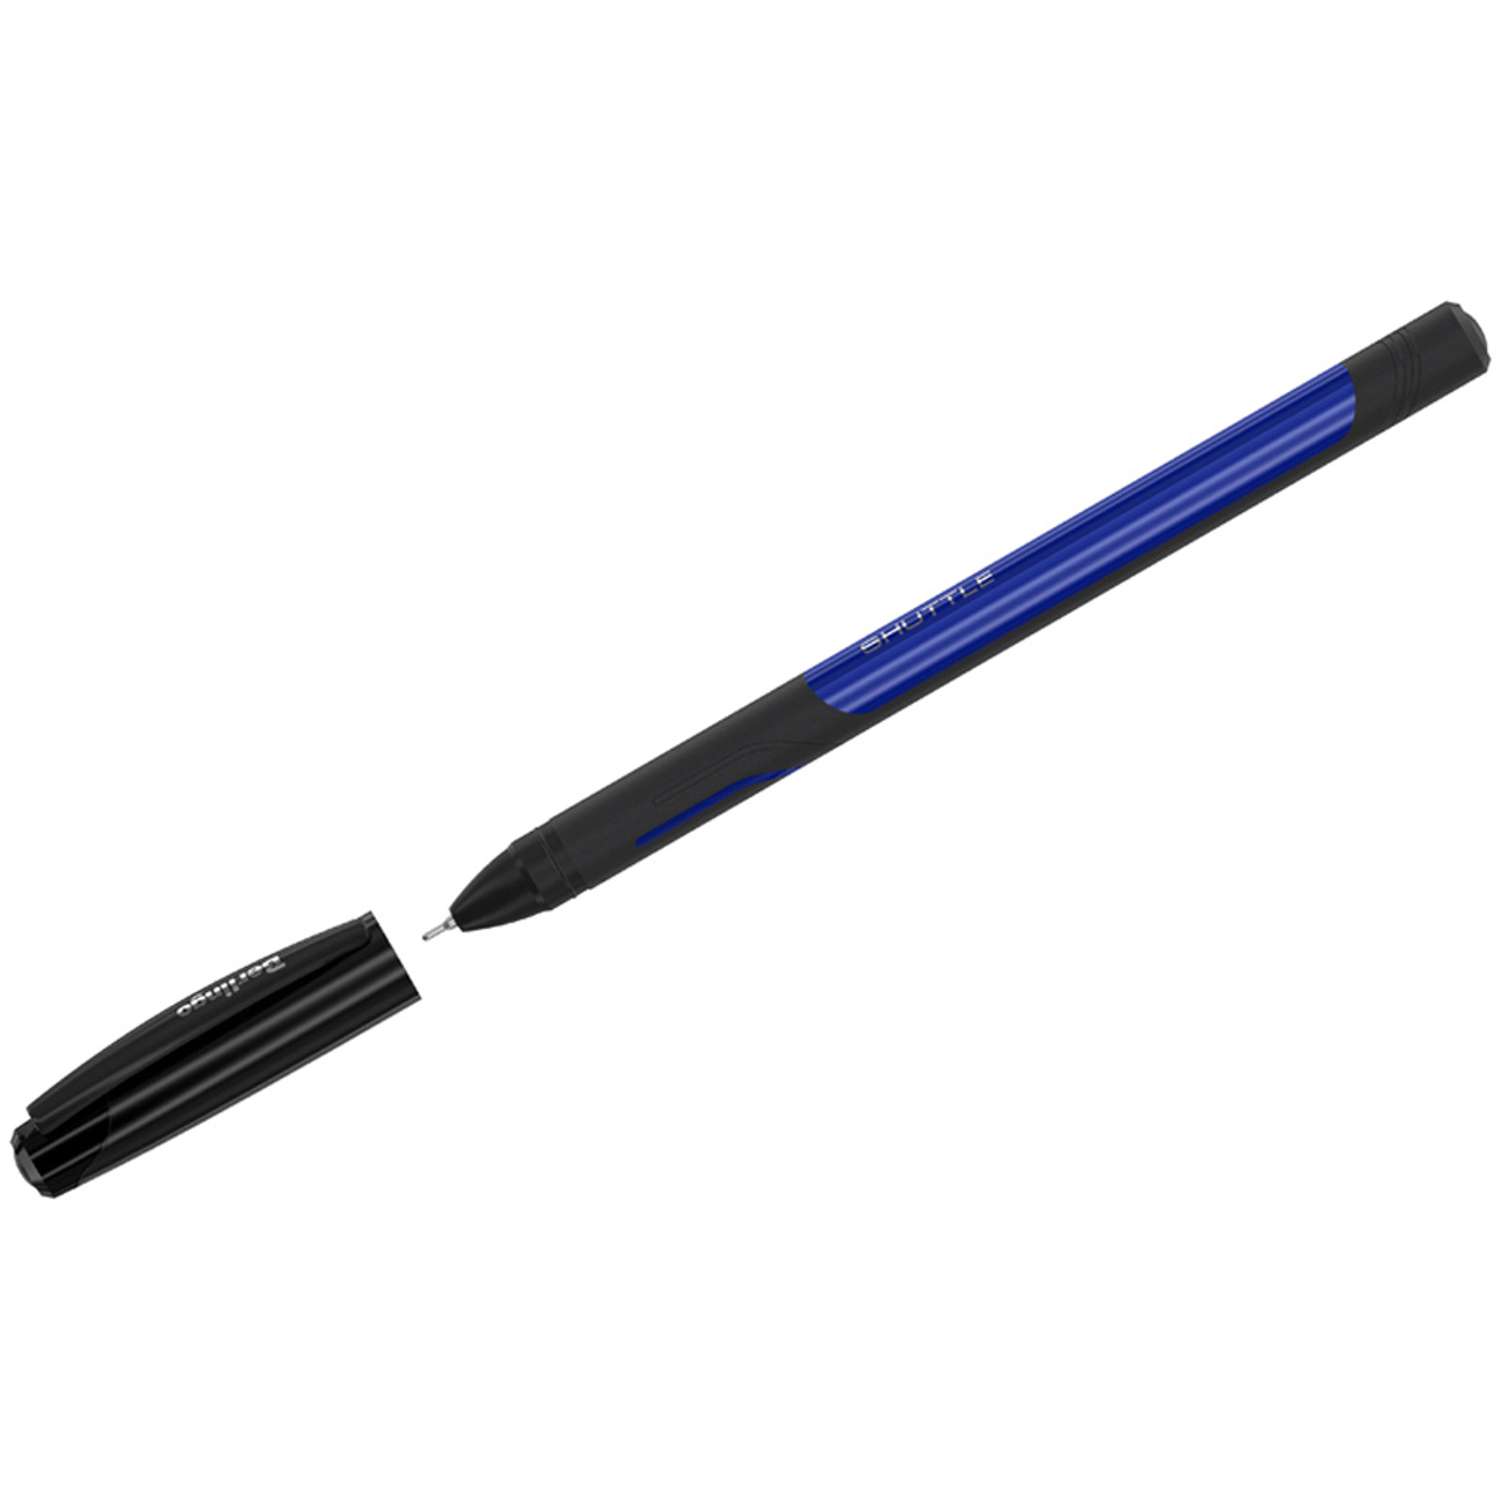 Ручка гелевая Berlingo Shuttle синяя 0.5 мм игольчатый стержень набор 12 шт - фото 2